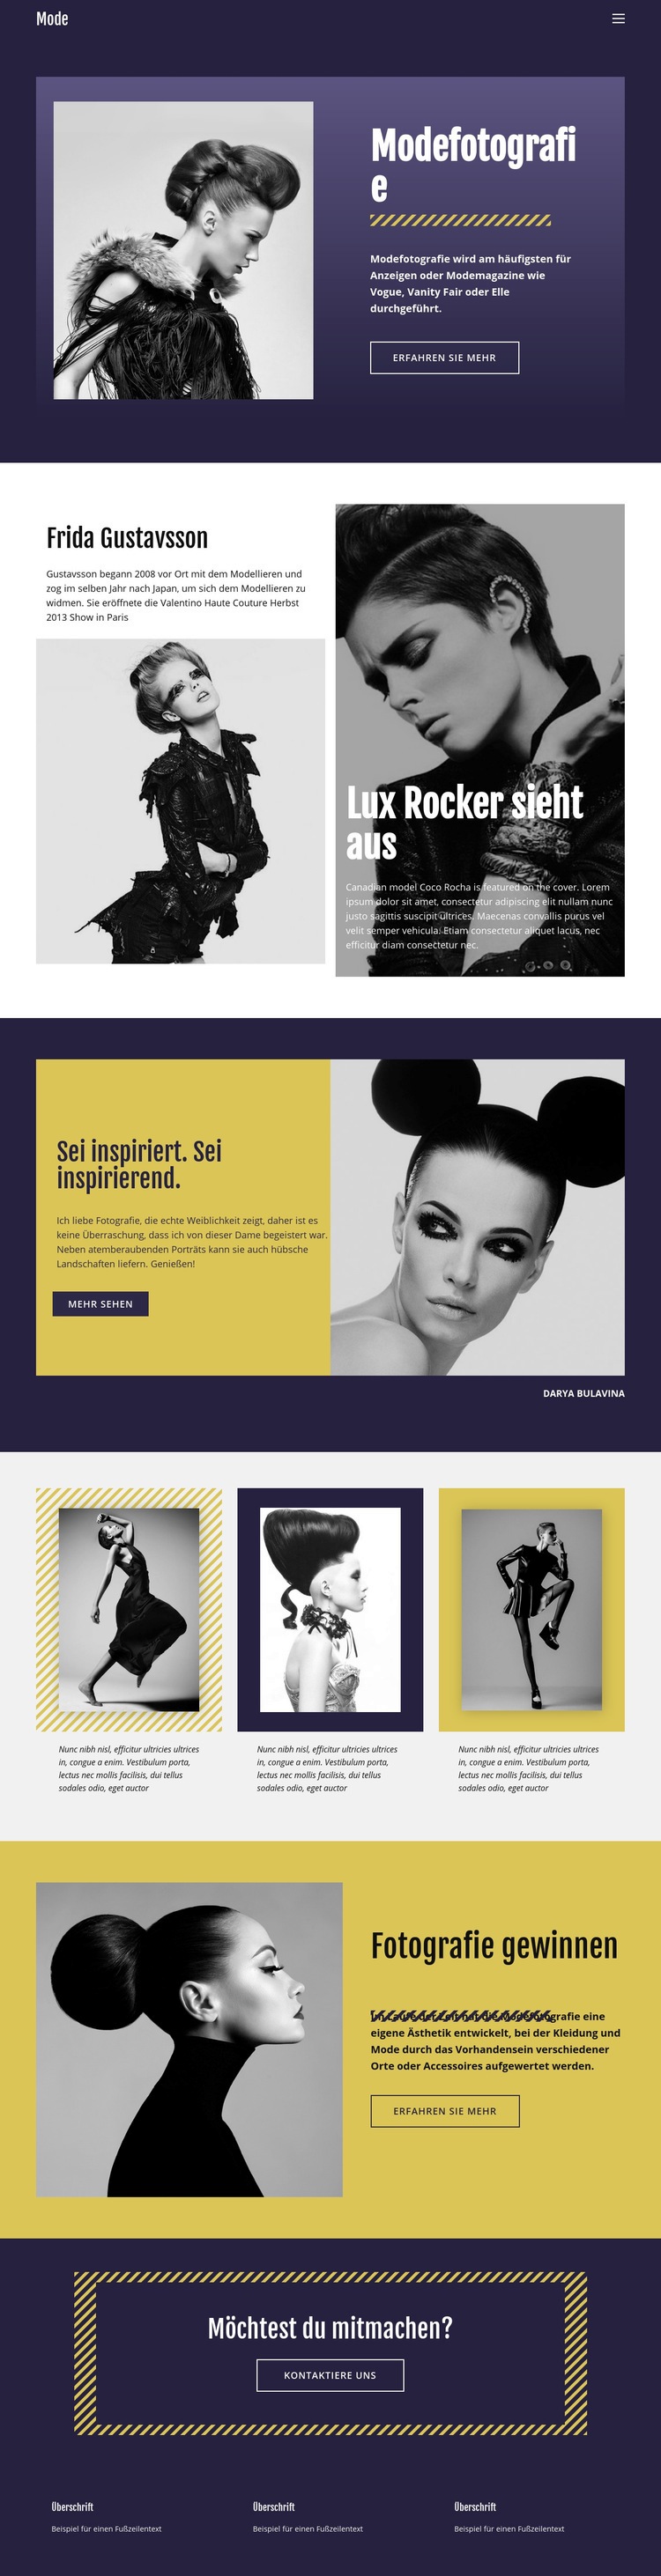 Modefotografie im klassischen Stil Website design